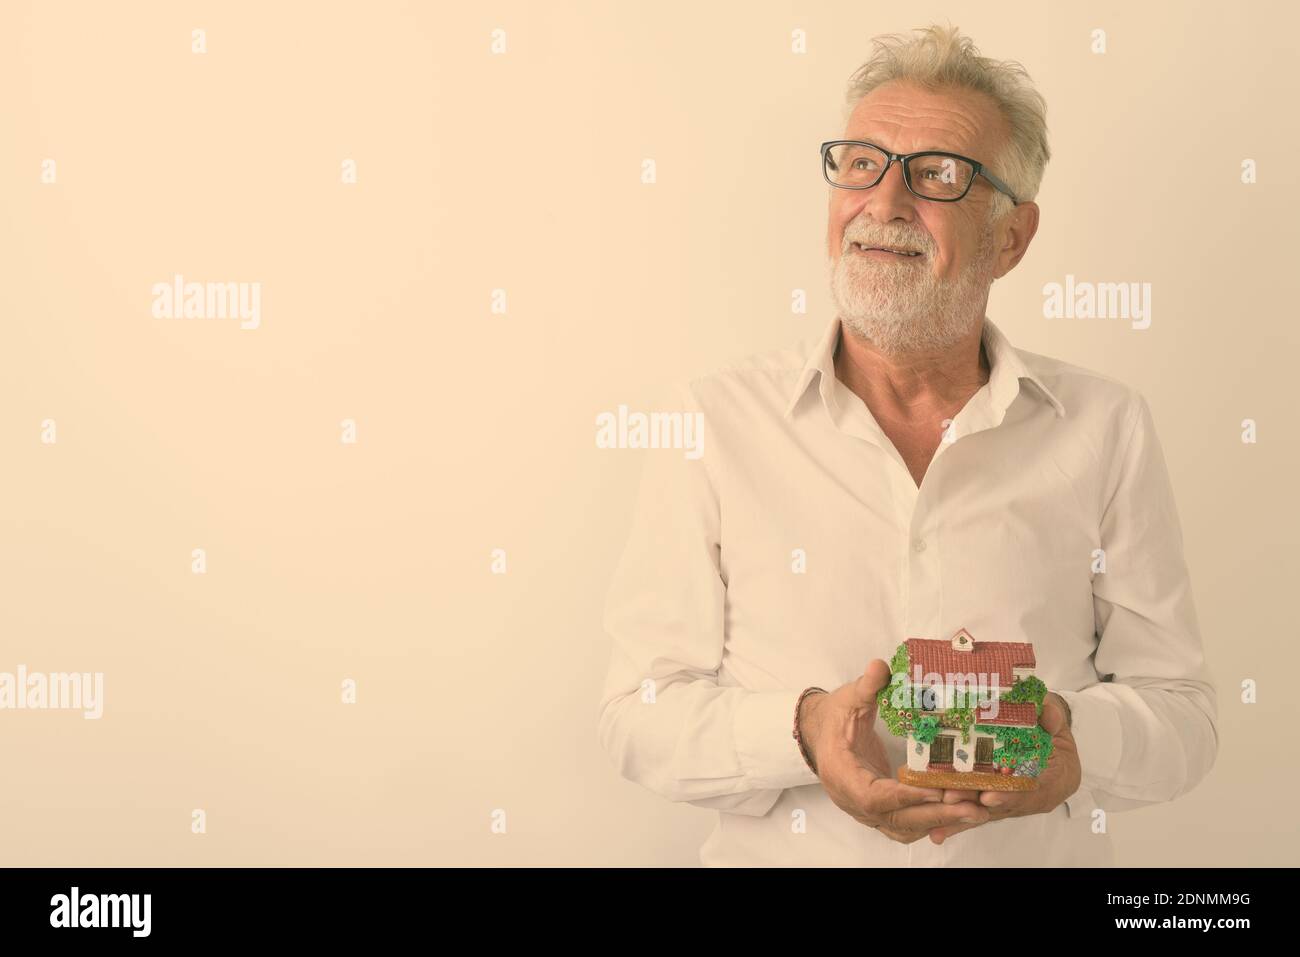 Studio shot of happy senior bearded man smiling while thinking and holding house figurine with eyeglasses against white background Stock Photo